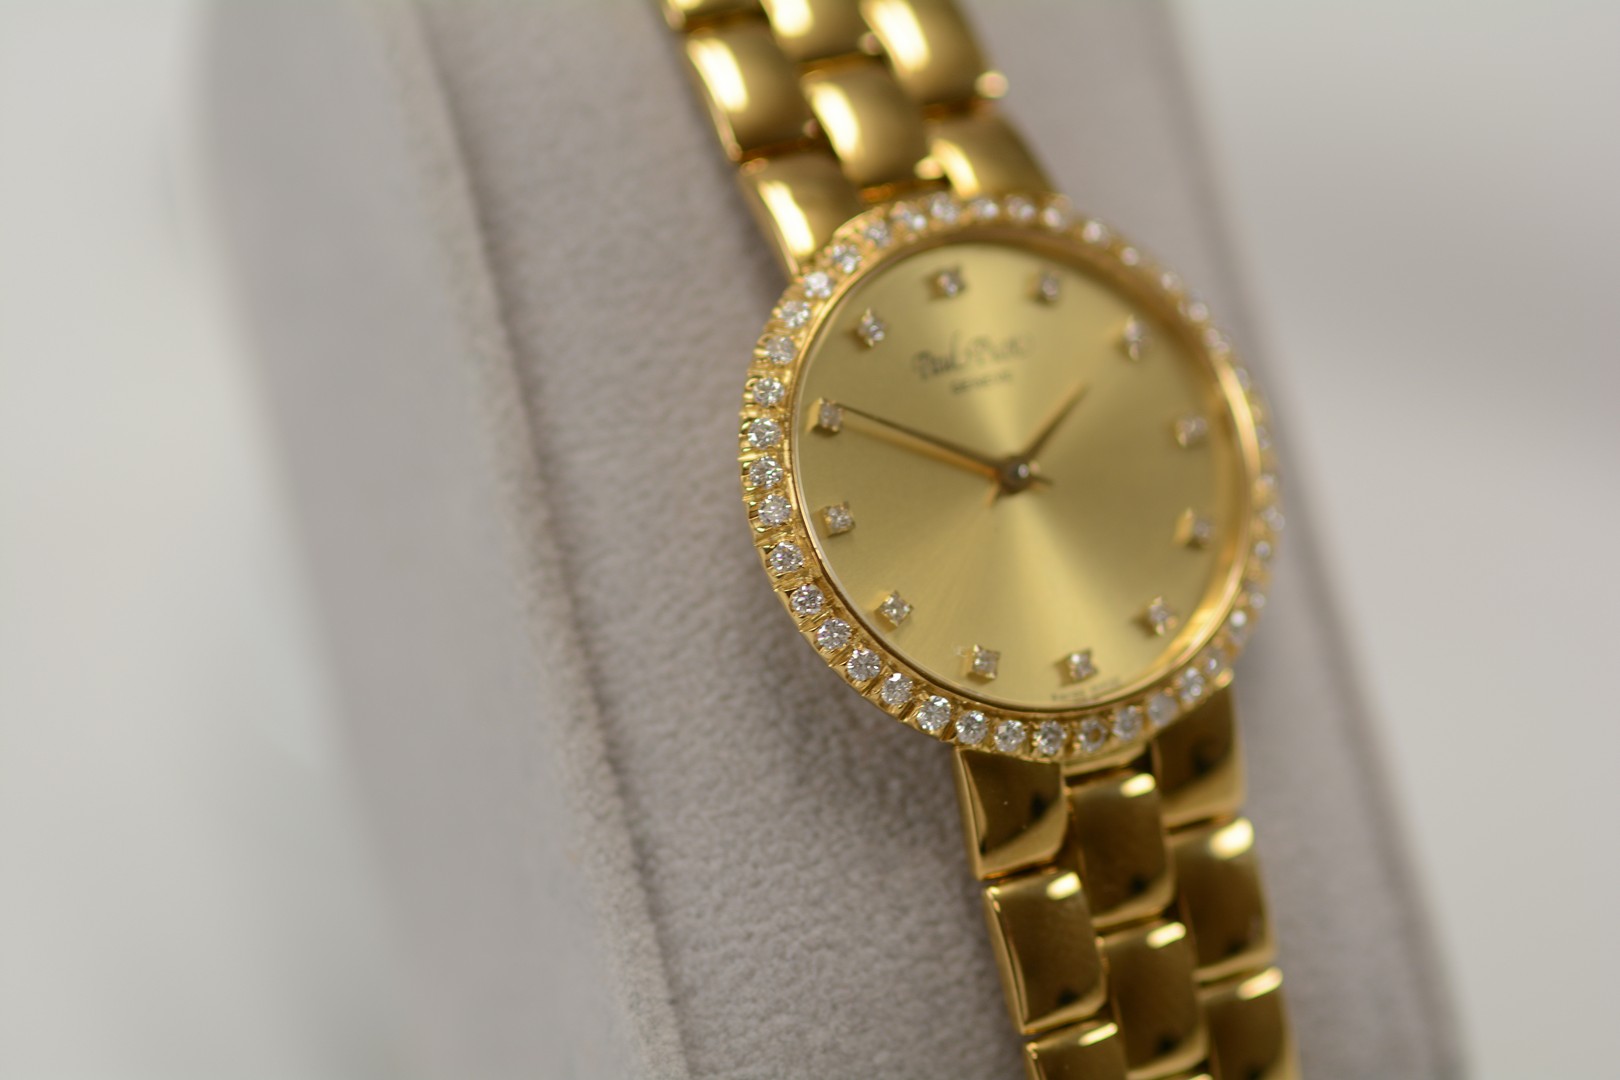 Paul Picot / Diamond - Lady's Yellow gold Wrist Watch - Image 12 of 15